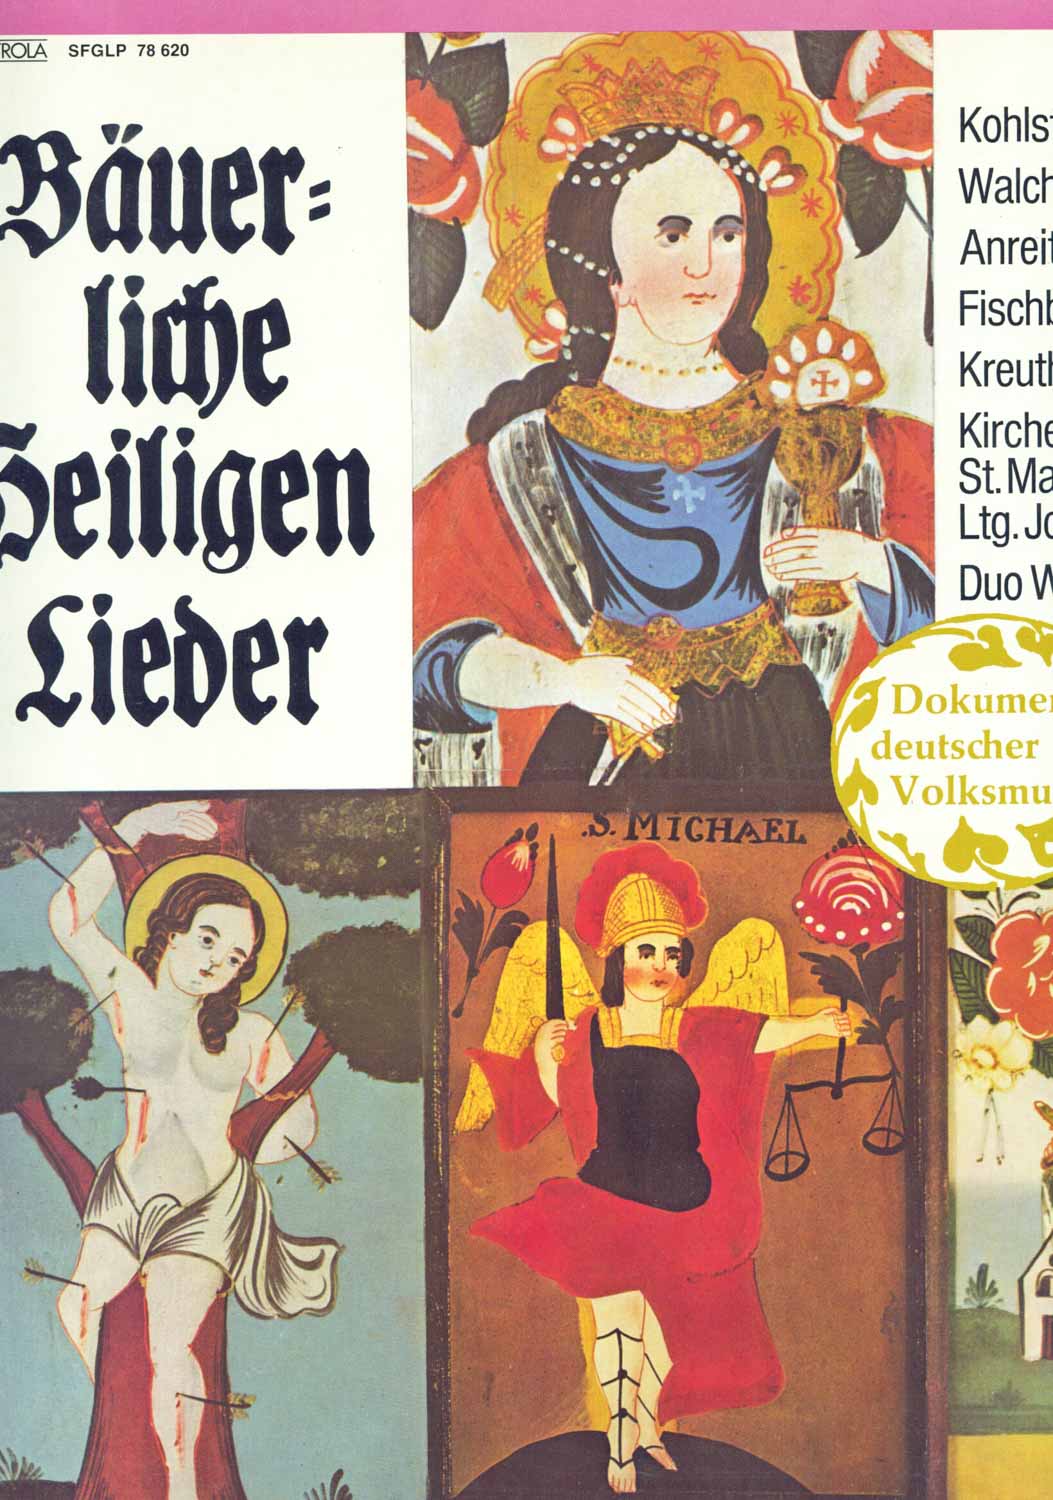 Kohlstatter Musi, Walchschmied Buam, Anreiter Dreigesang, Fischbachauer Sängerinnen u.a.  Bäuerliche Heiligenlieder (SFGLP 78 620)  *LP 12'' (Vinyl)*. 